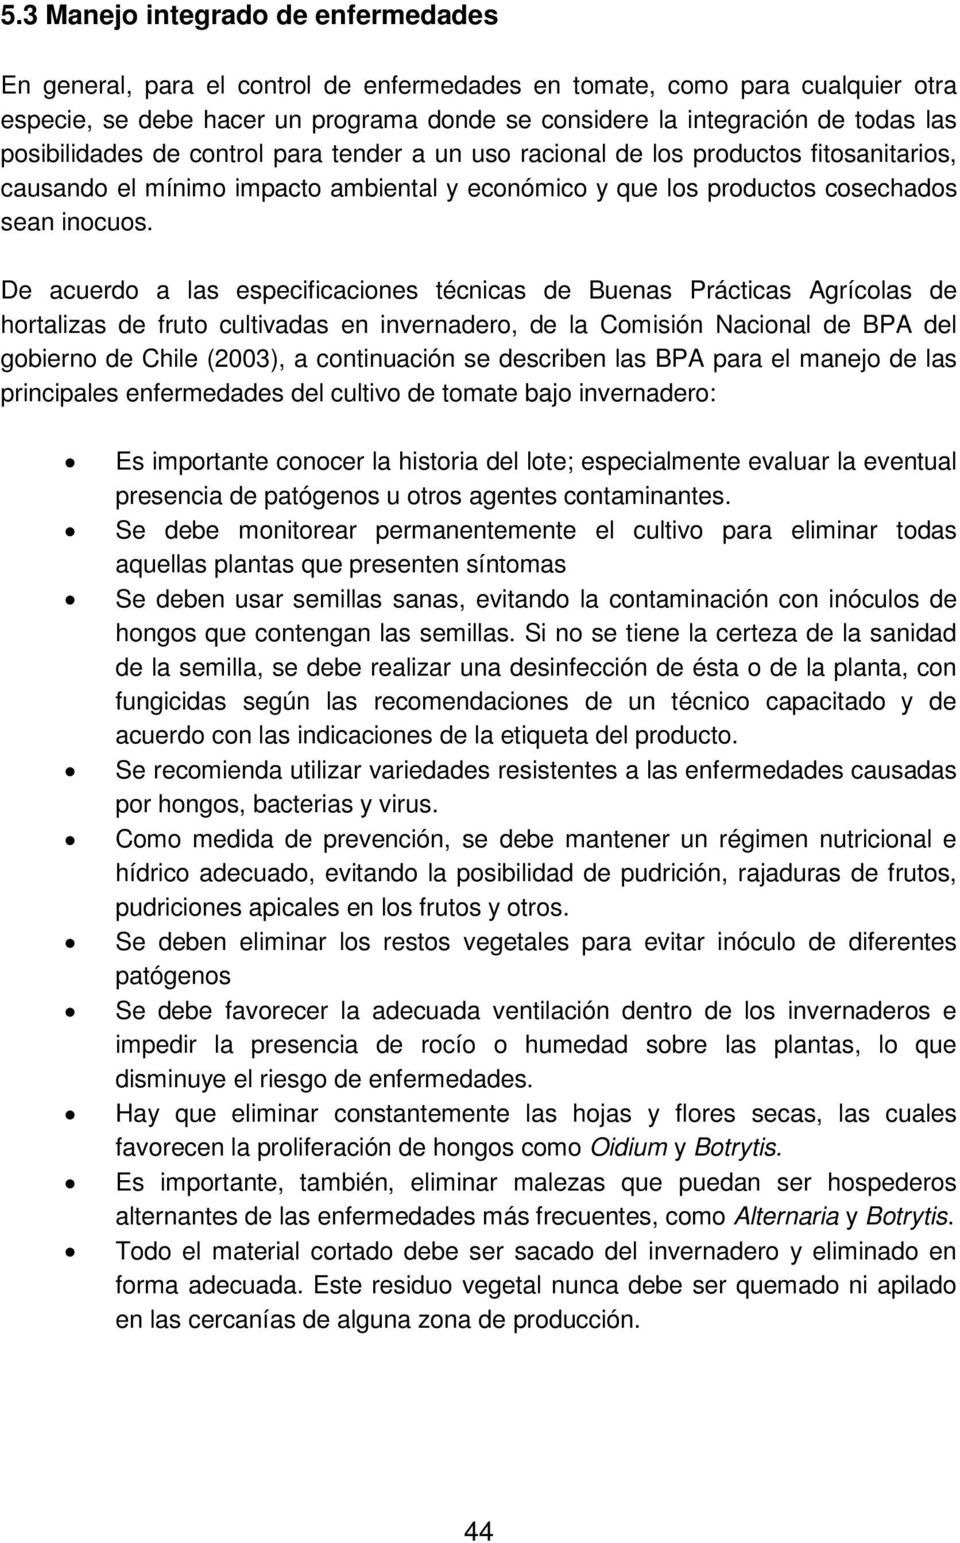 De acuerdo a las especificaciones técnicas de Buenas Prácticas Agrícolas de hortalizas de fruto cultivadas en invernadero, de la Comisión Nacional de BPA del gobierno de Chile (2003), a continuación